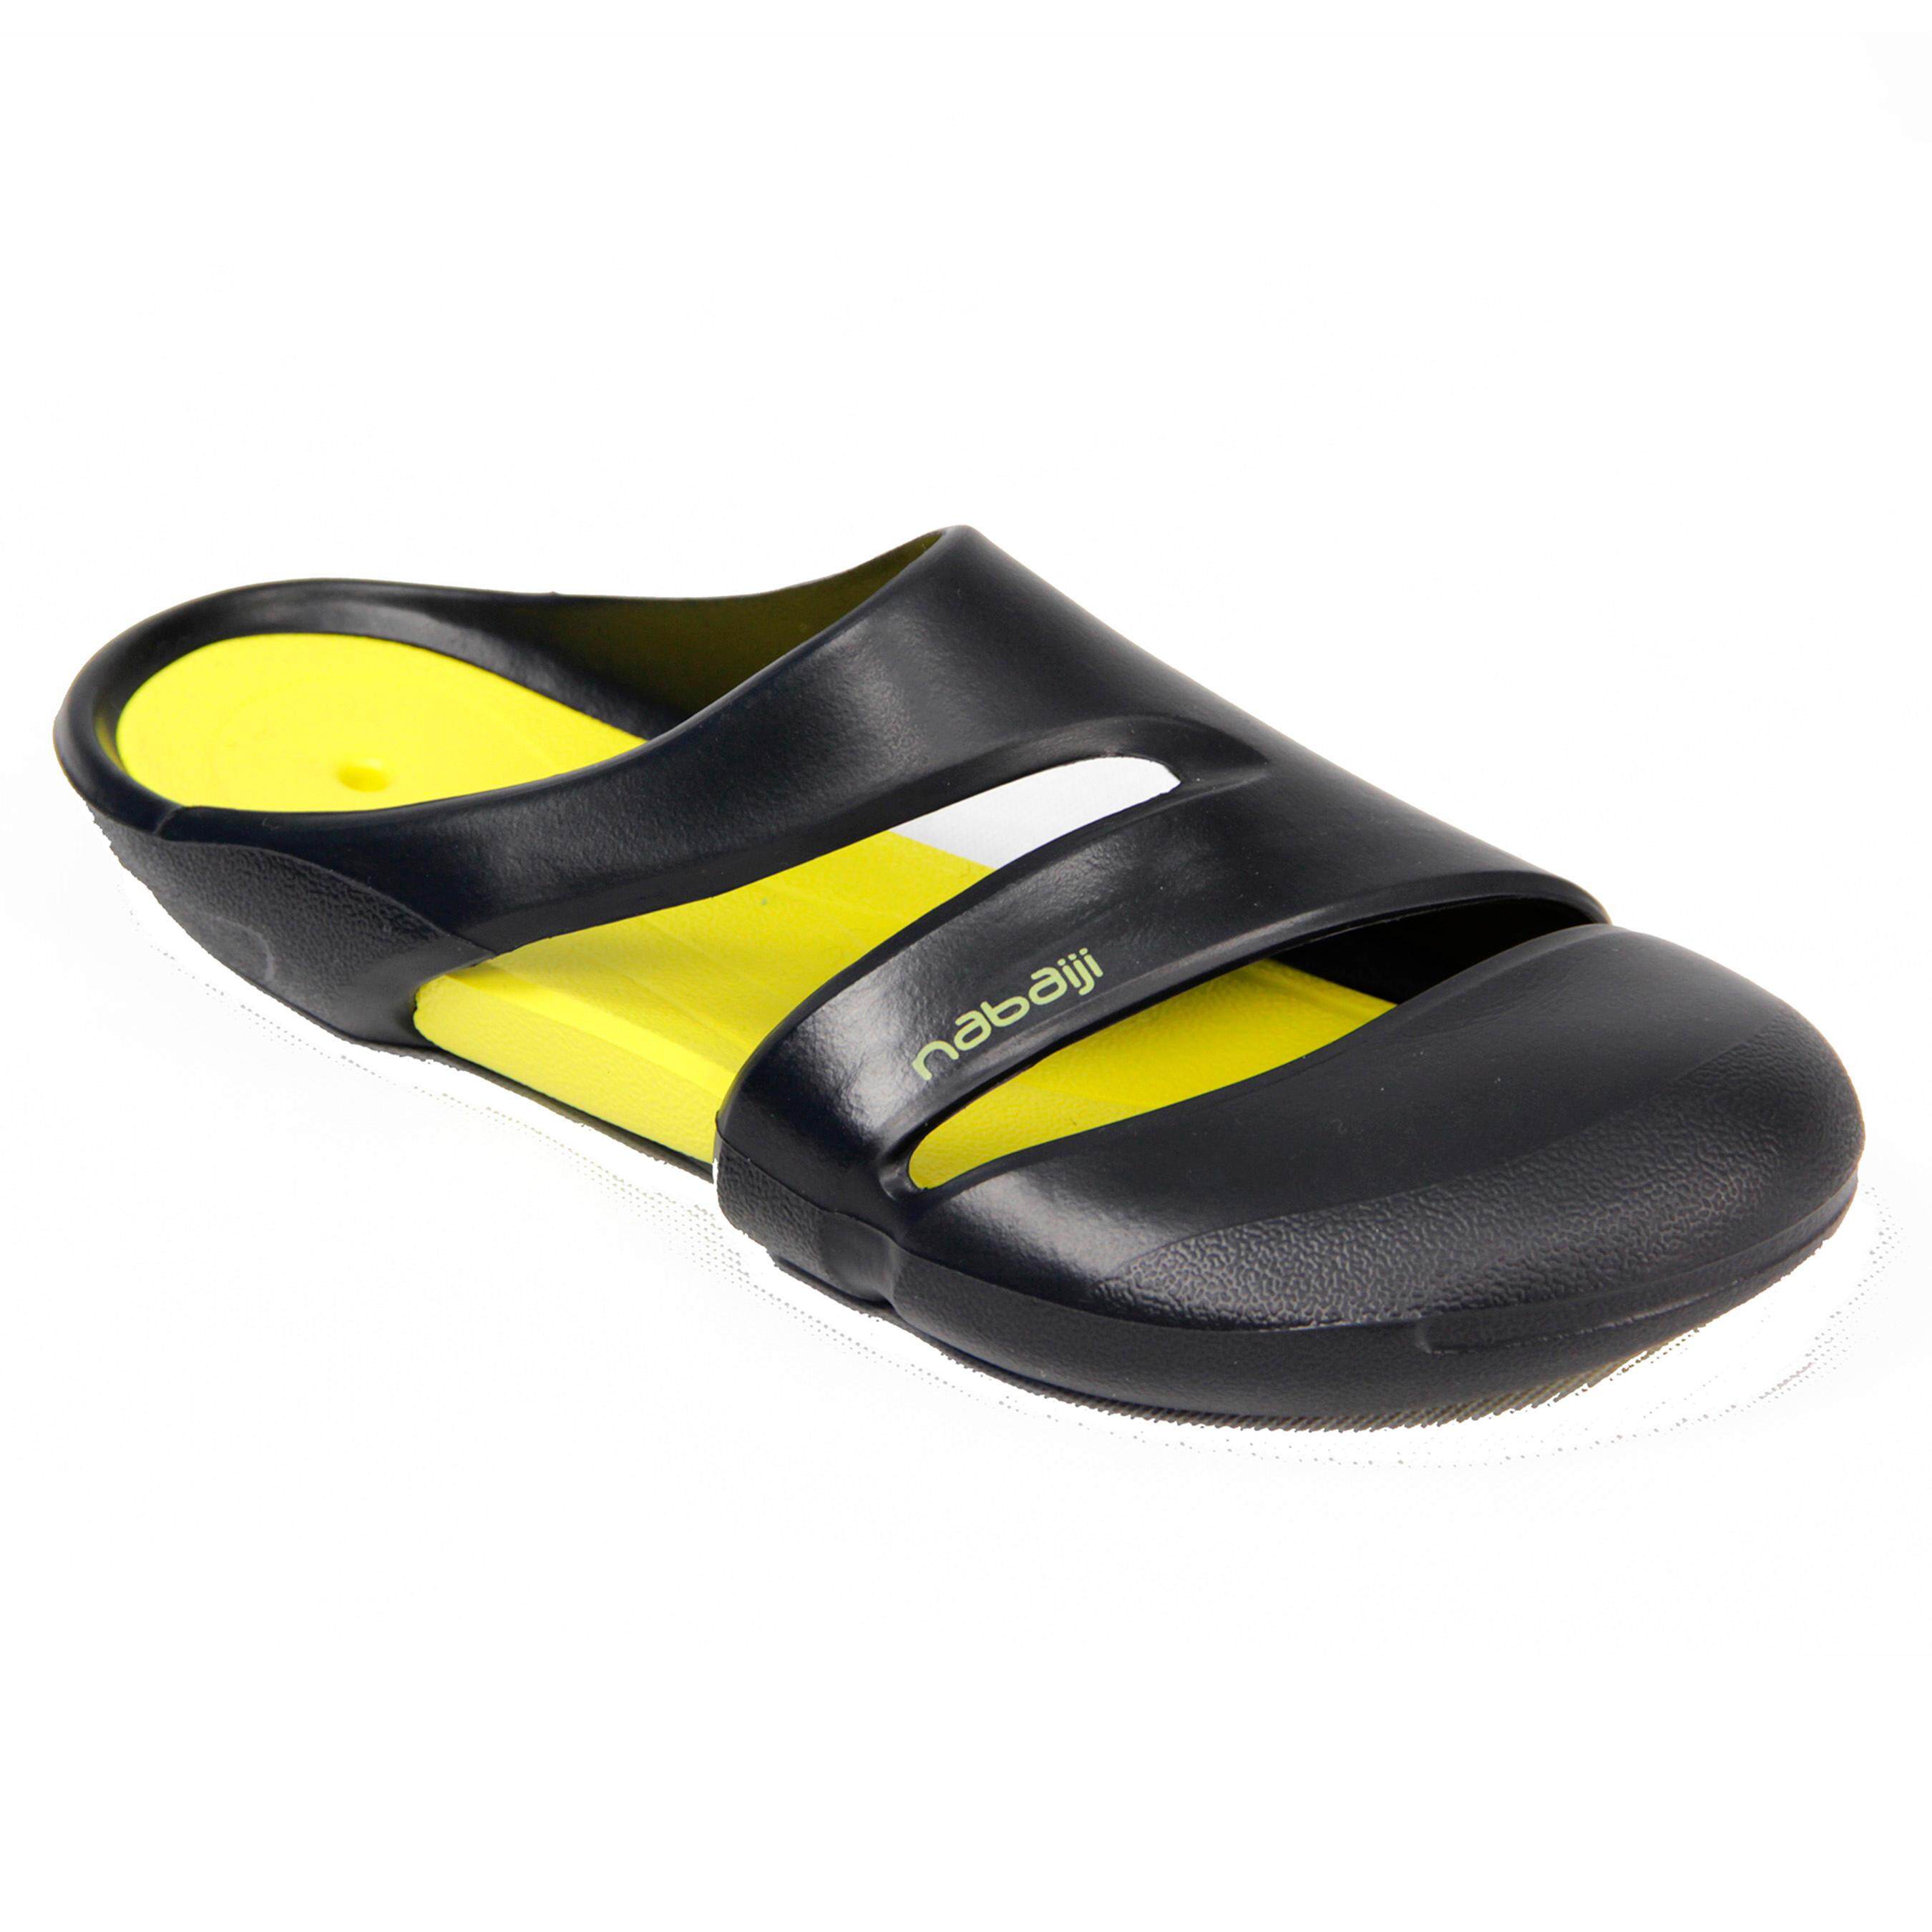 [ด่วน!! โปรโมชั่นมีจำนวนจำกัด] รองเท้าแตะเดินริมสระสำหรับผู้ใหญ่ (สีเทา/เหลือง) สำหรับ ว่ายน้ำ ว่ายน้ำ ว่ายน้ำทะเล